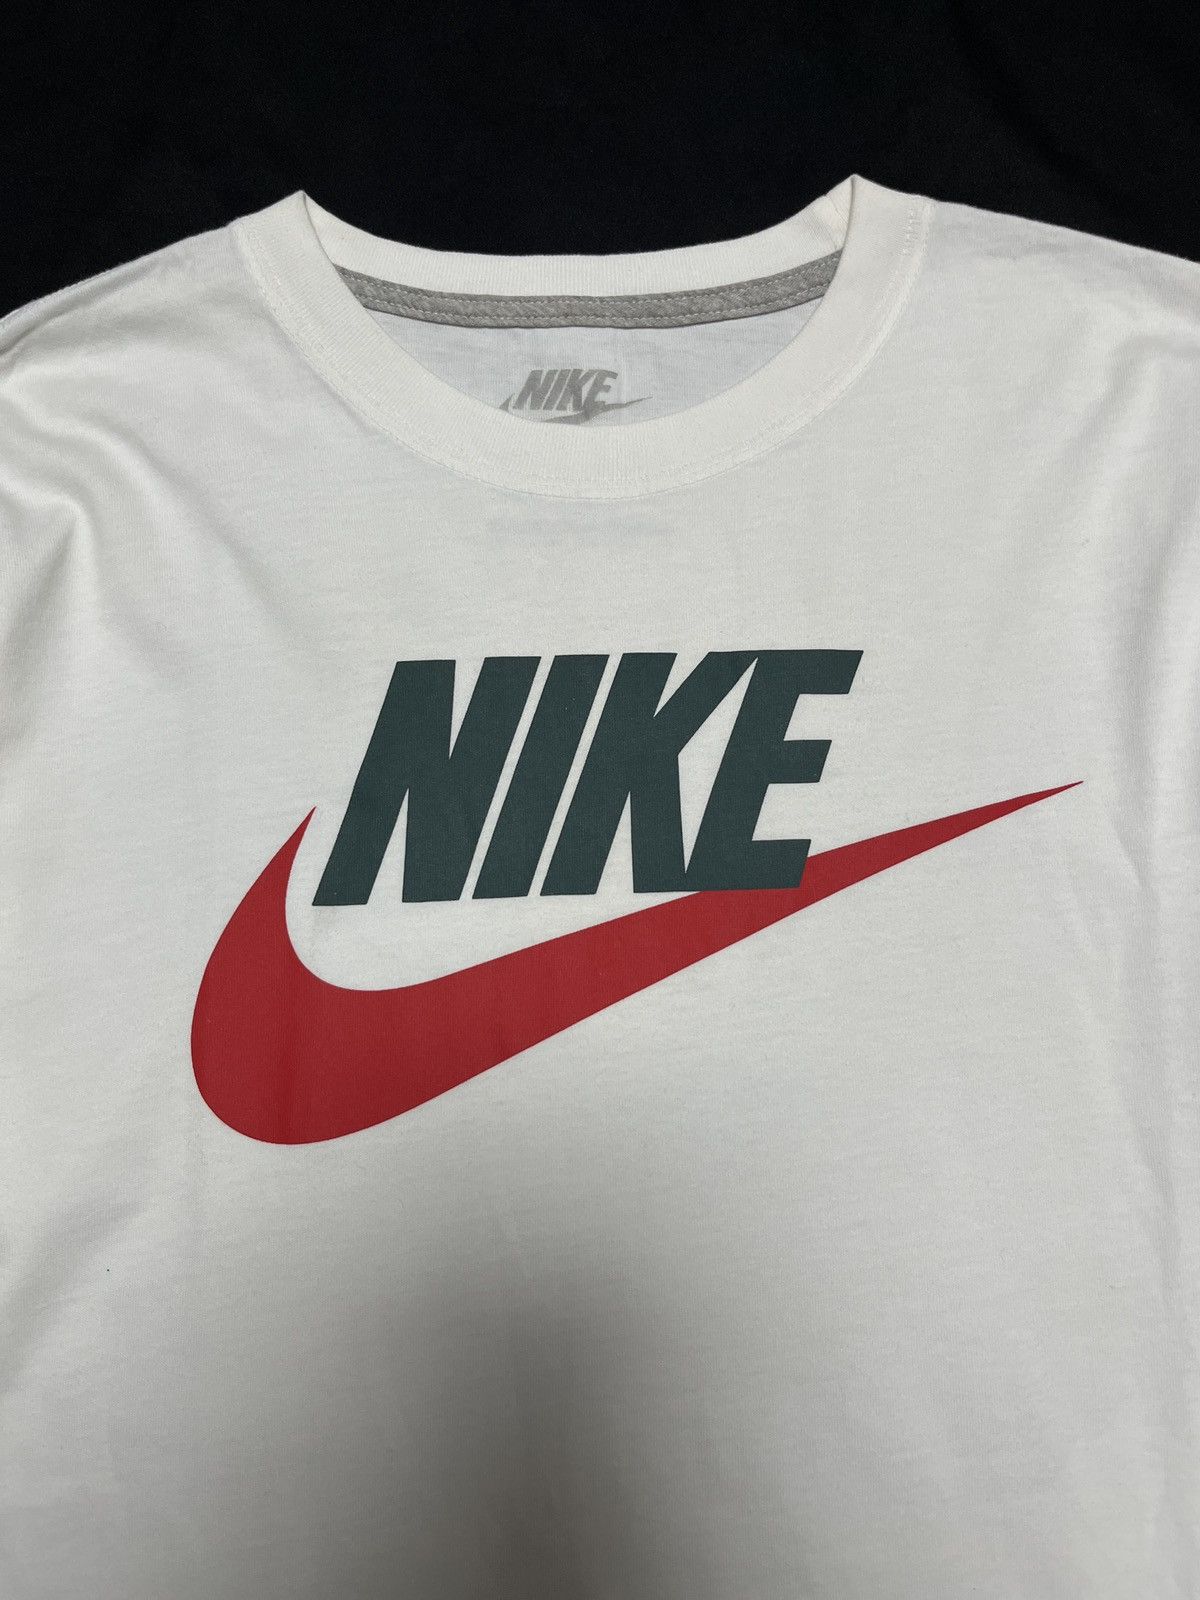 Vintage Nike Sportswear NSW Long Sleeves Shirt White Medium - 2